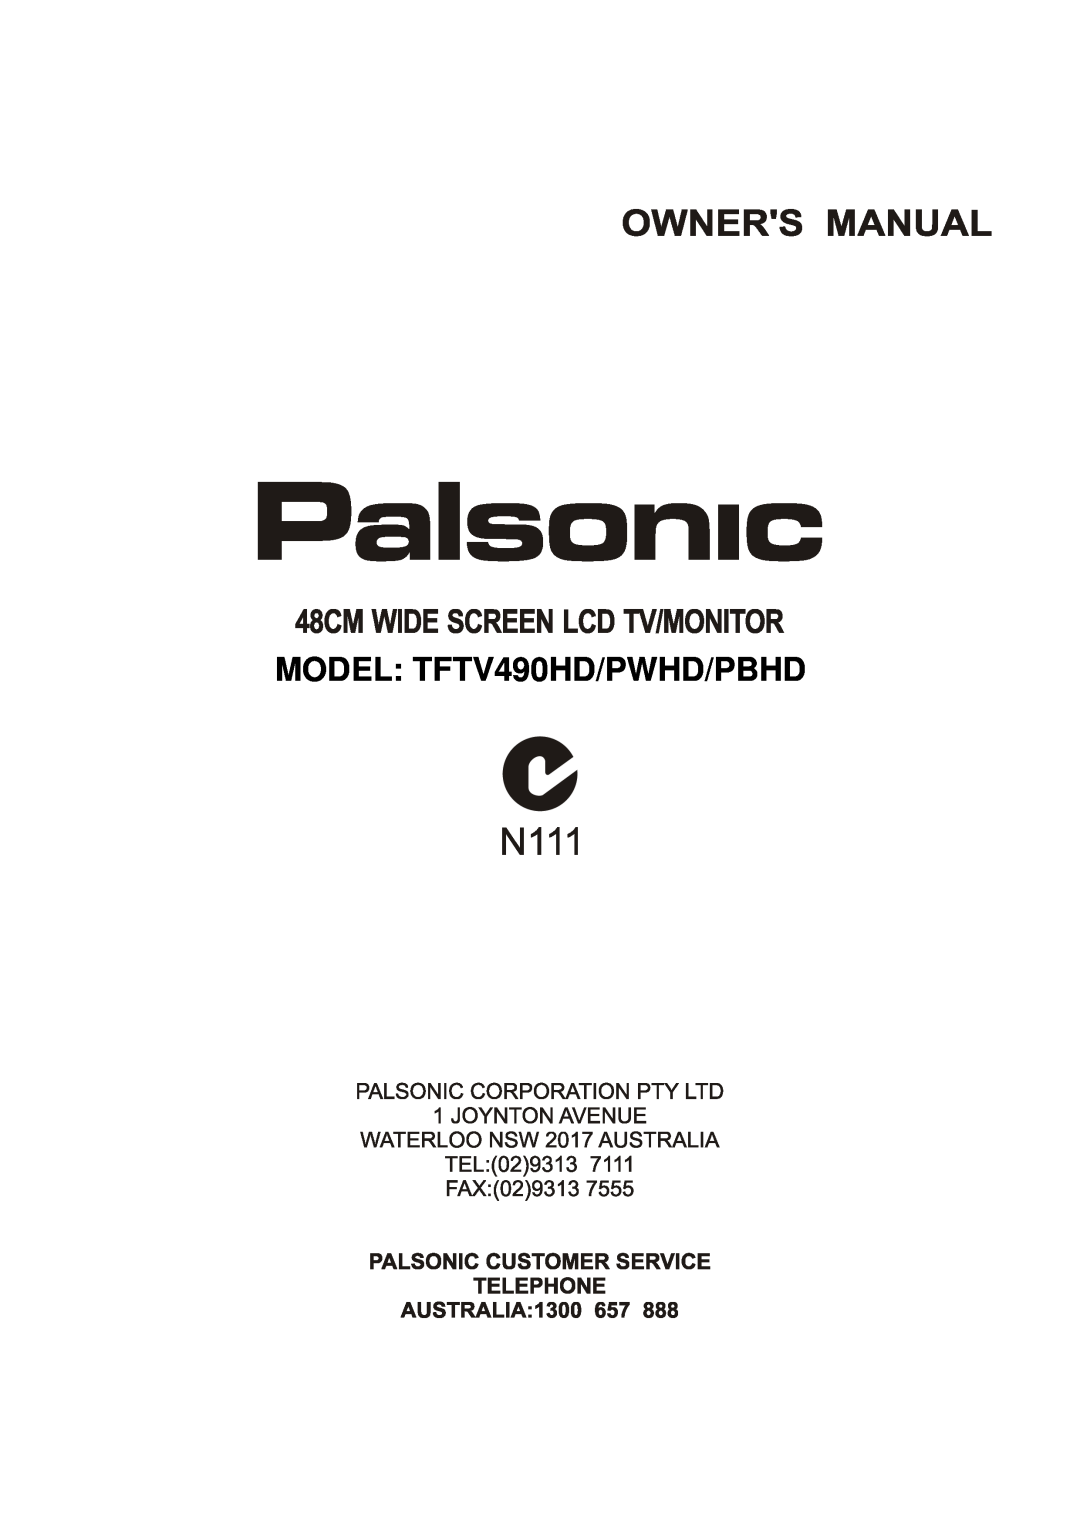 Palsonic TFTV490PWHD manual MODEL TFTV490HD/PWHD/PBHD 